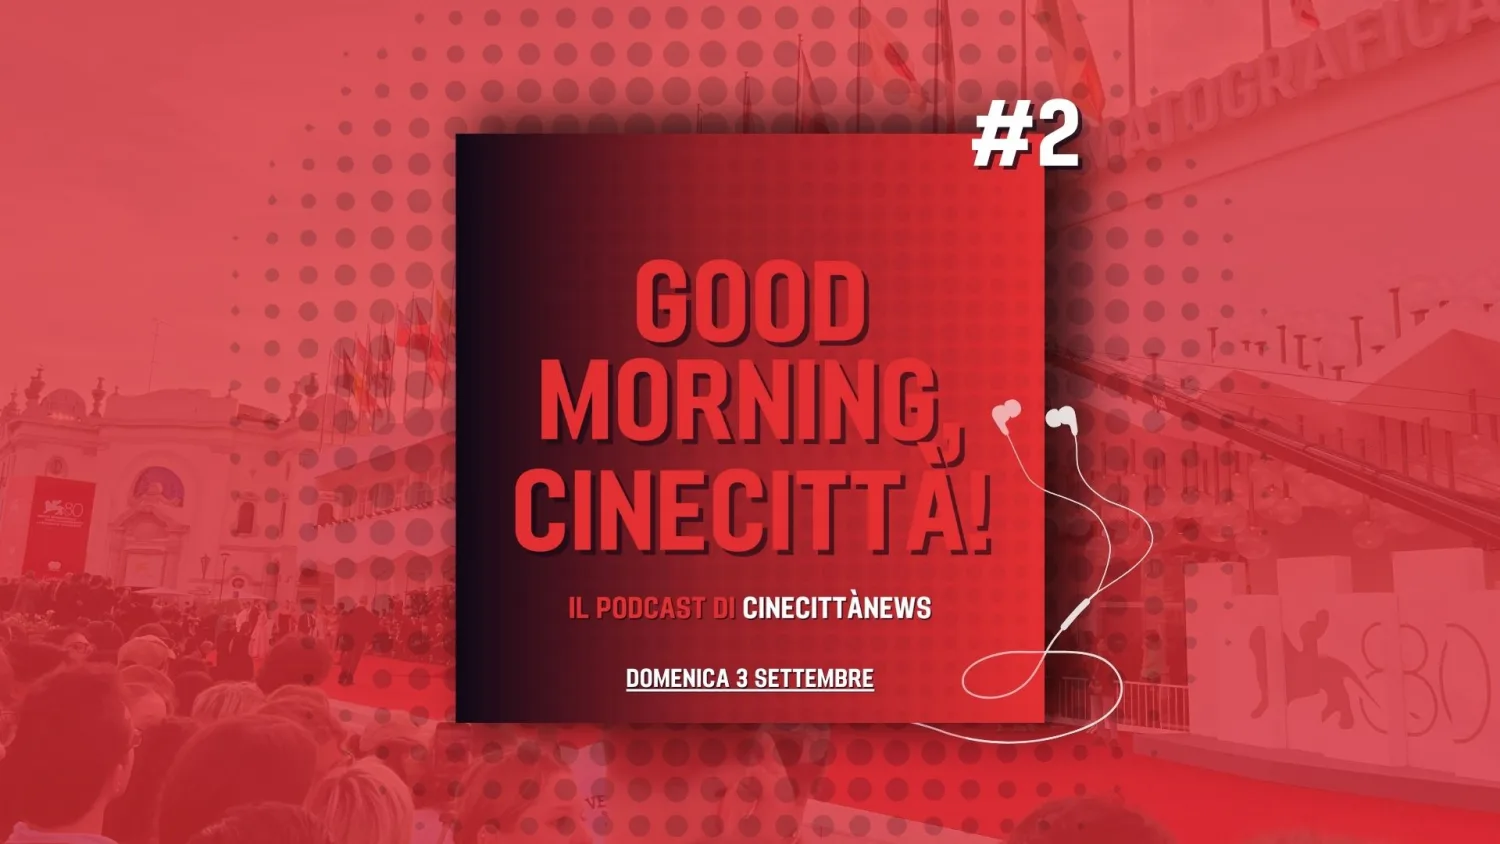 Good Morning, Cinecittà!, online il secondo episodio del podcast su Venezia80